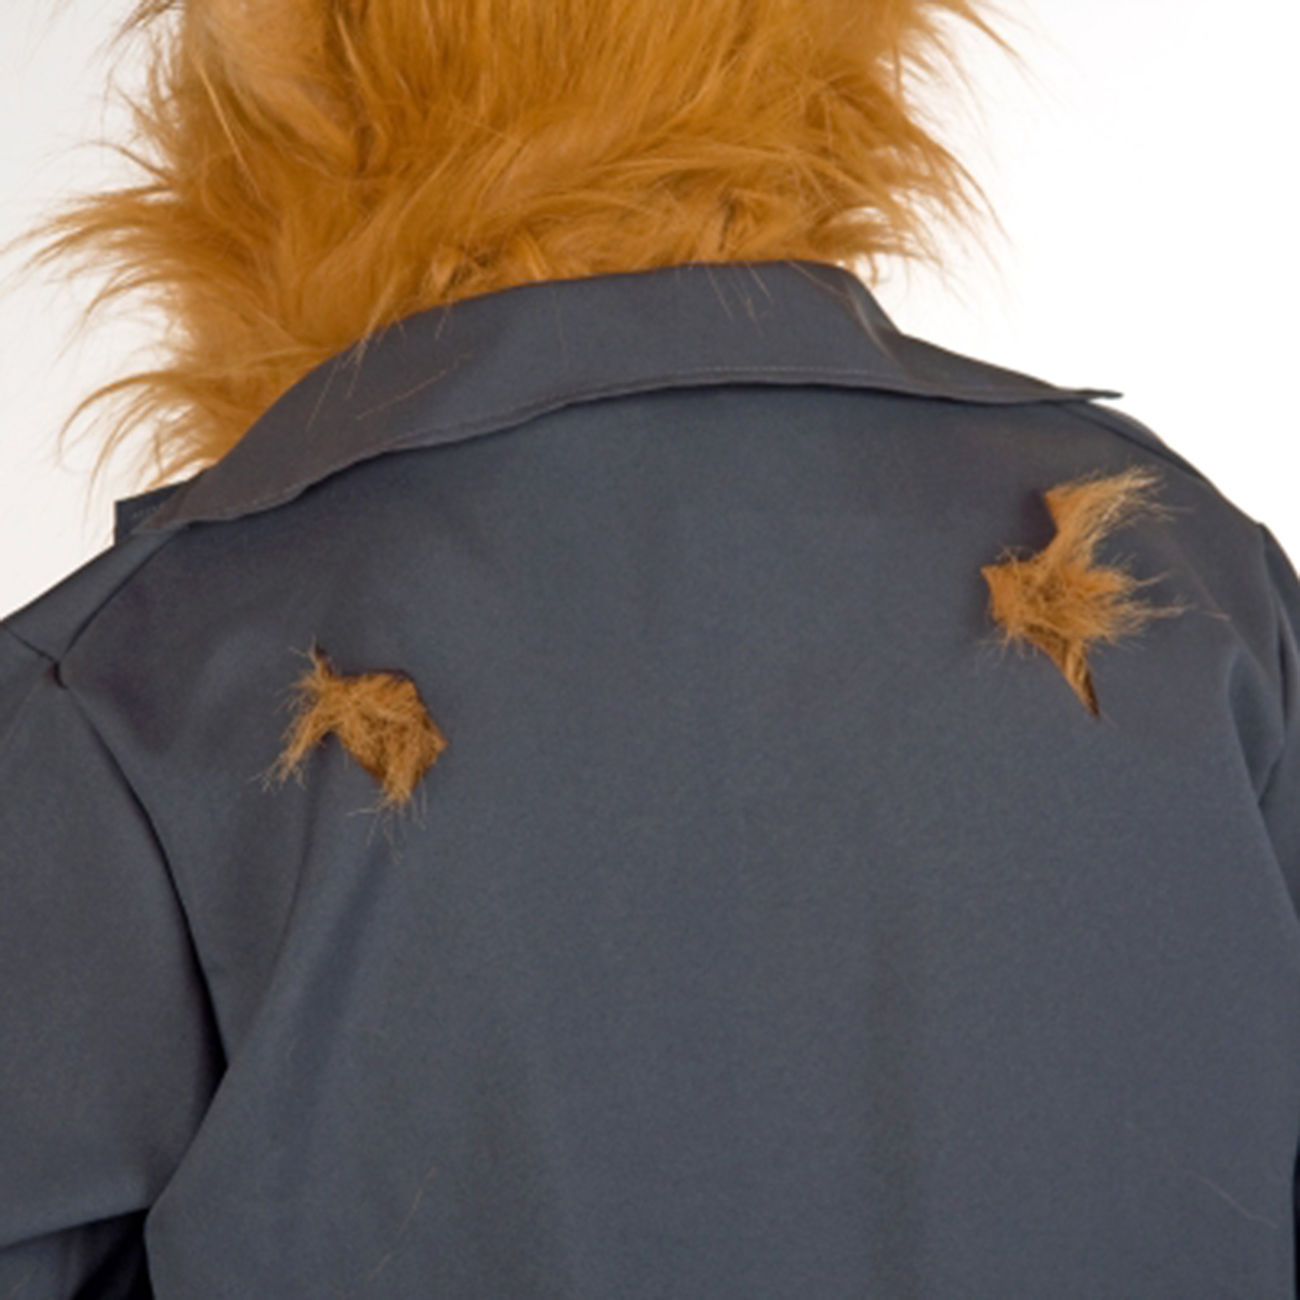 Werwolf Verkleidung Hemd und Jacke mit Plüschbesatz Bild 1